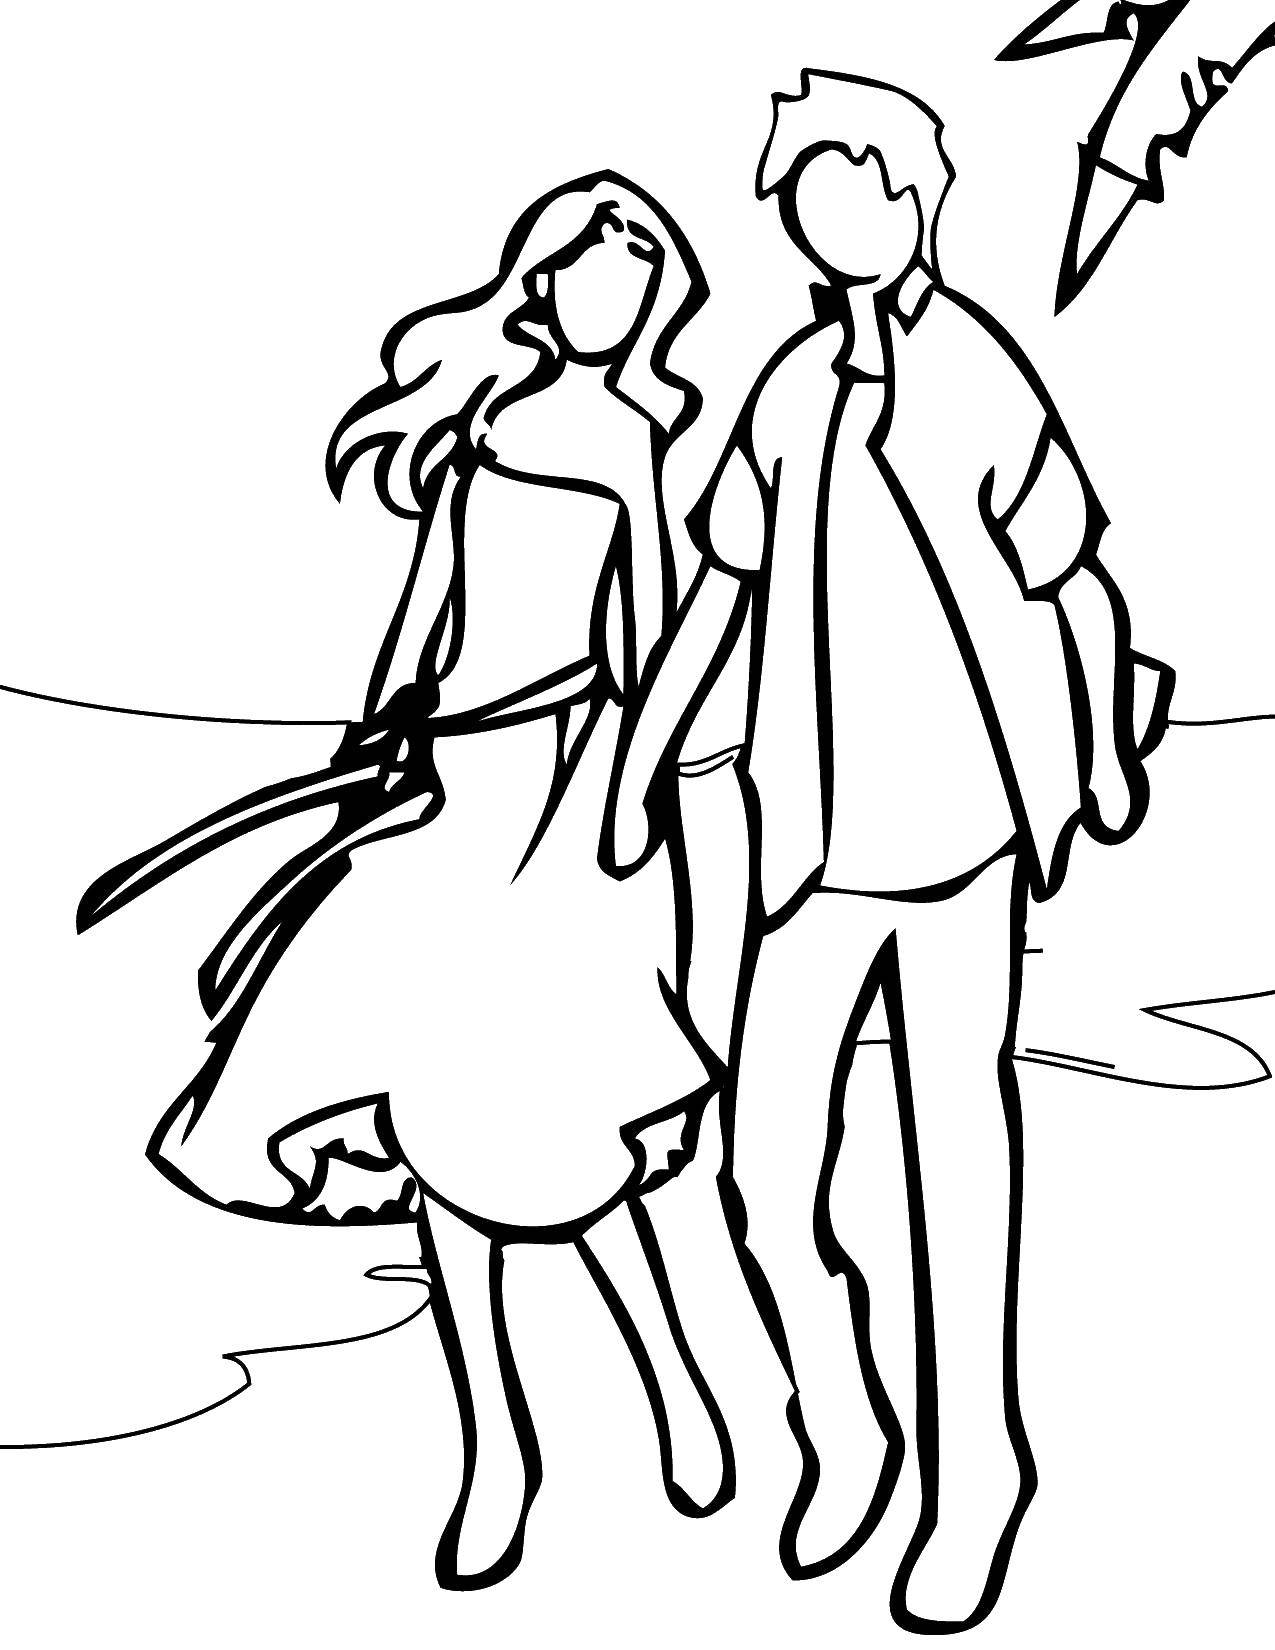 Опис: розмальовки  Хлопець з дівчиною гуляють по березі. Категорія: Пляж. Теги:  пляж, хлопець, дівчина.